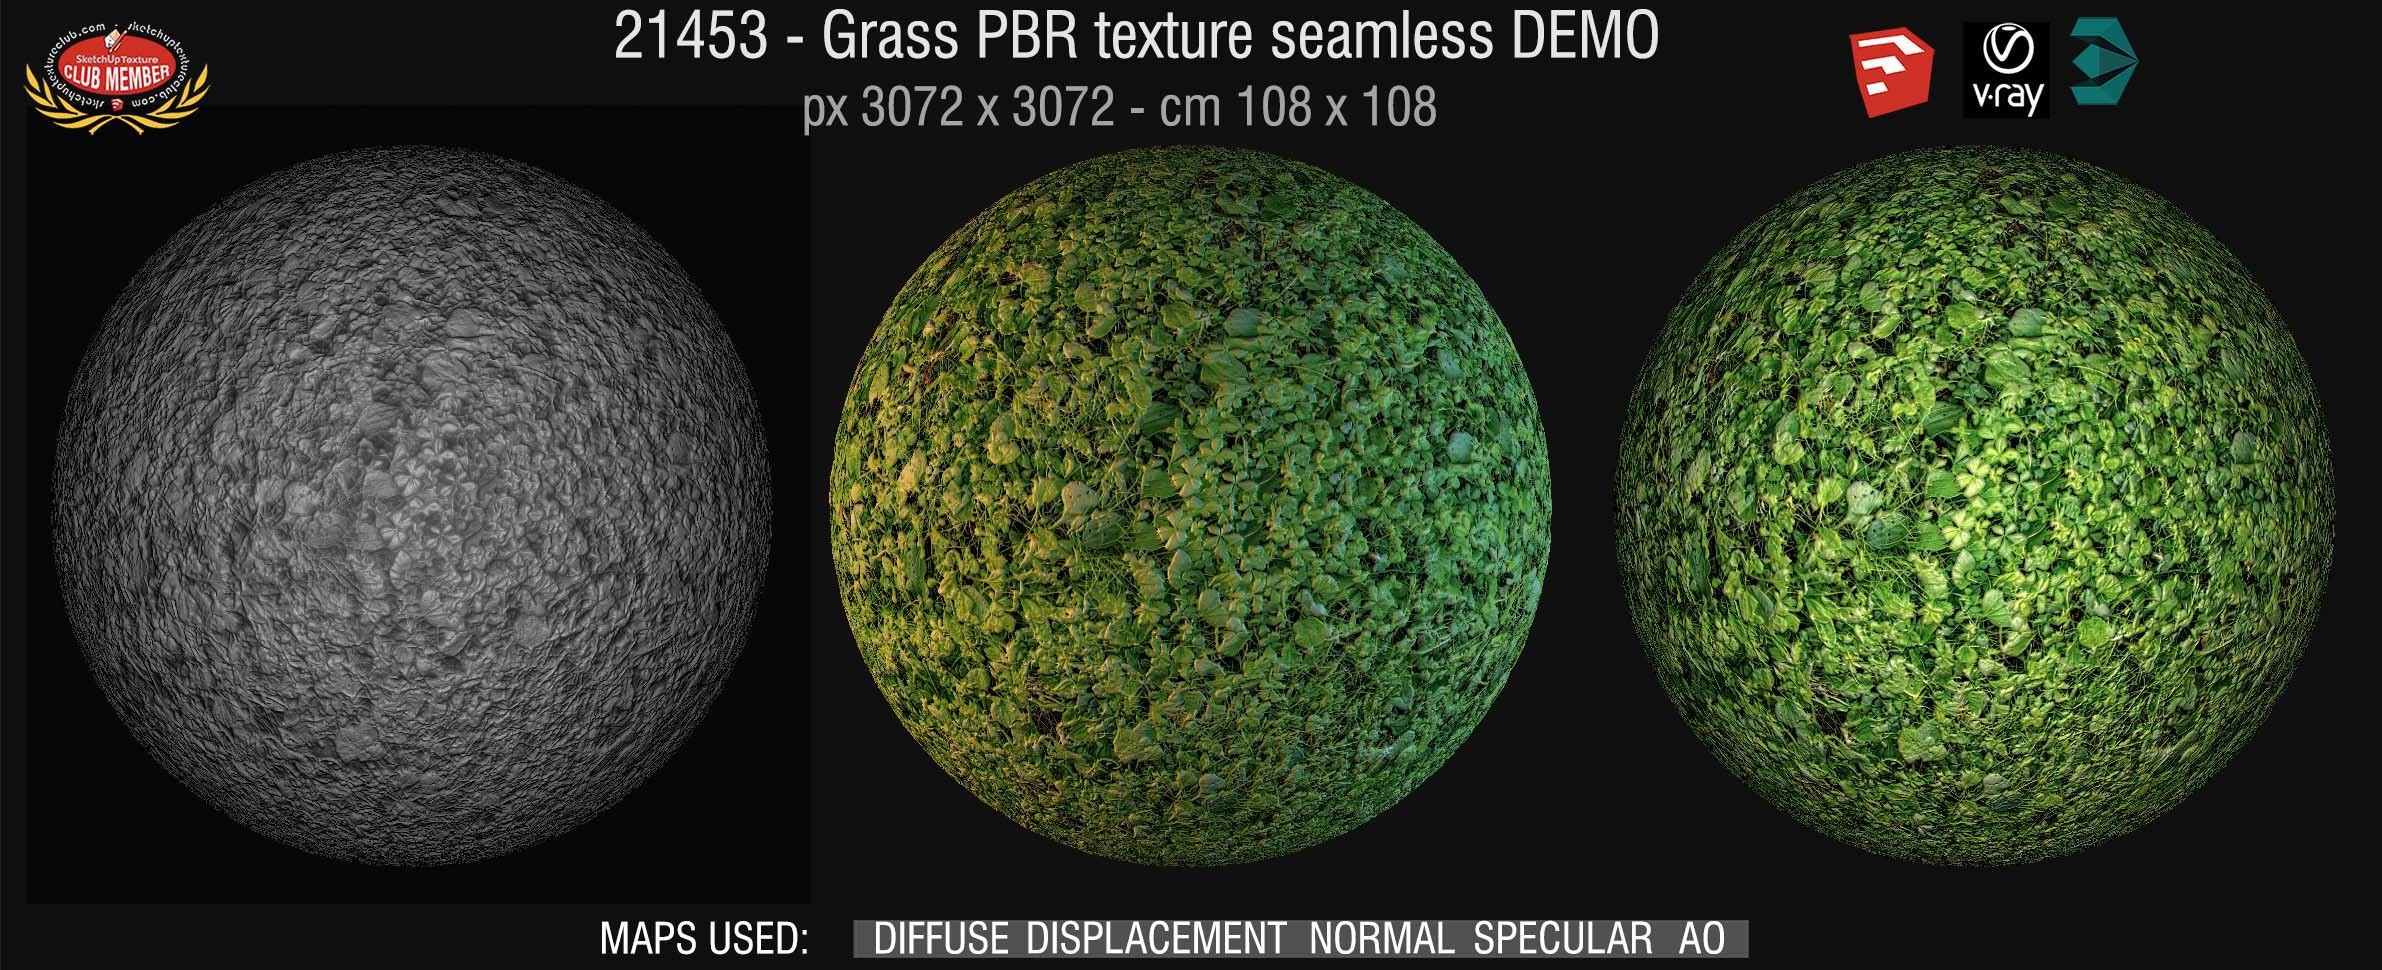 21453 Grass PBR texture seamless DEMO